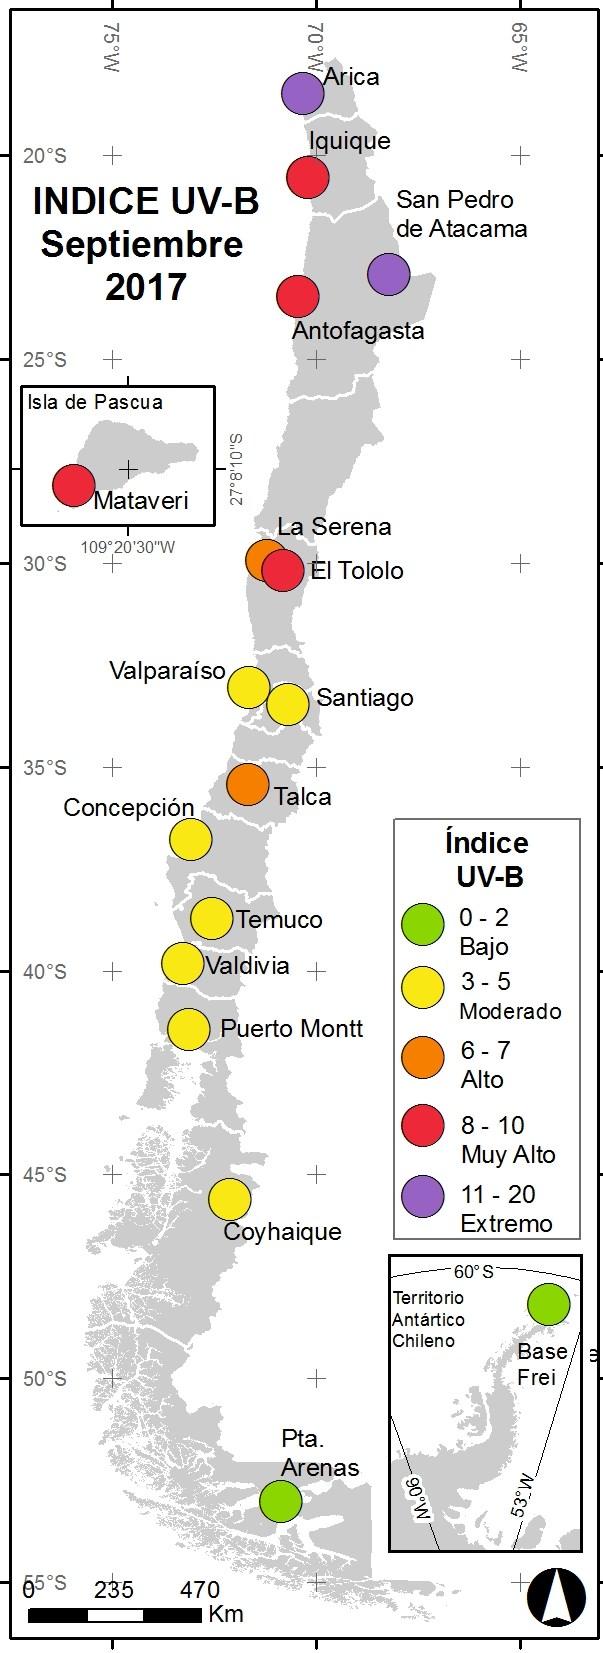 Boletín Índice de Radiación Ultravioleta La Figura 15 muestra que las ciudades de Arica y San Pedro de Atacama en el extremo norte de nuestro país, promediaron un valor 11 (Extremo) durante el mes de